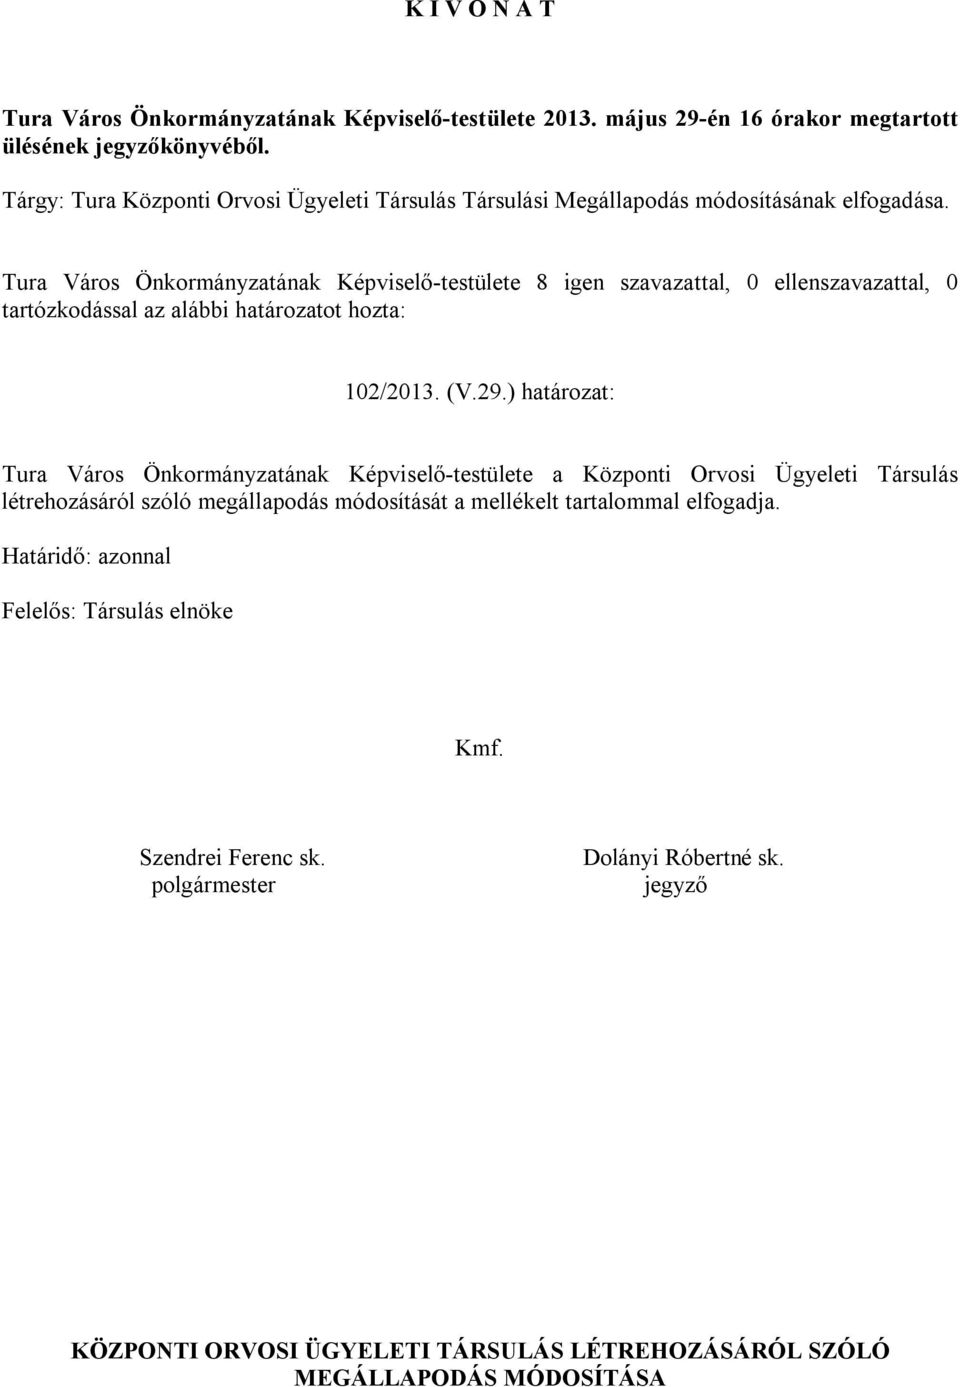 Tura Város Önkormányzatának Képviselő-testülete 8 igen szavazattal, 0 ellenszavazattal, 0 tartózkodással az alábbi határozatot hozta: 102/2013. (V.29.